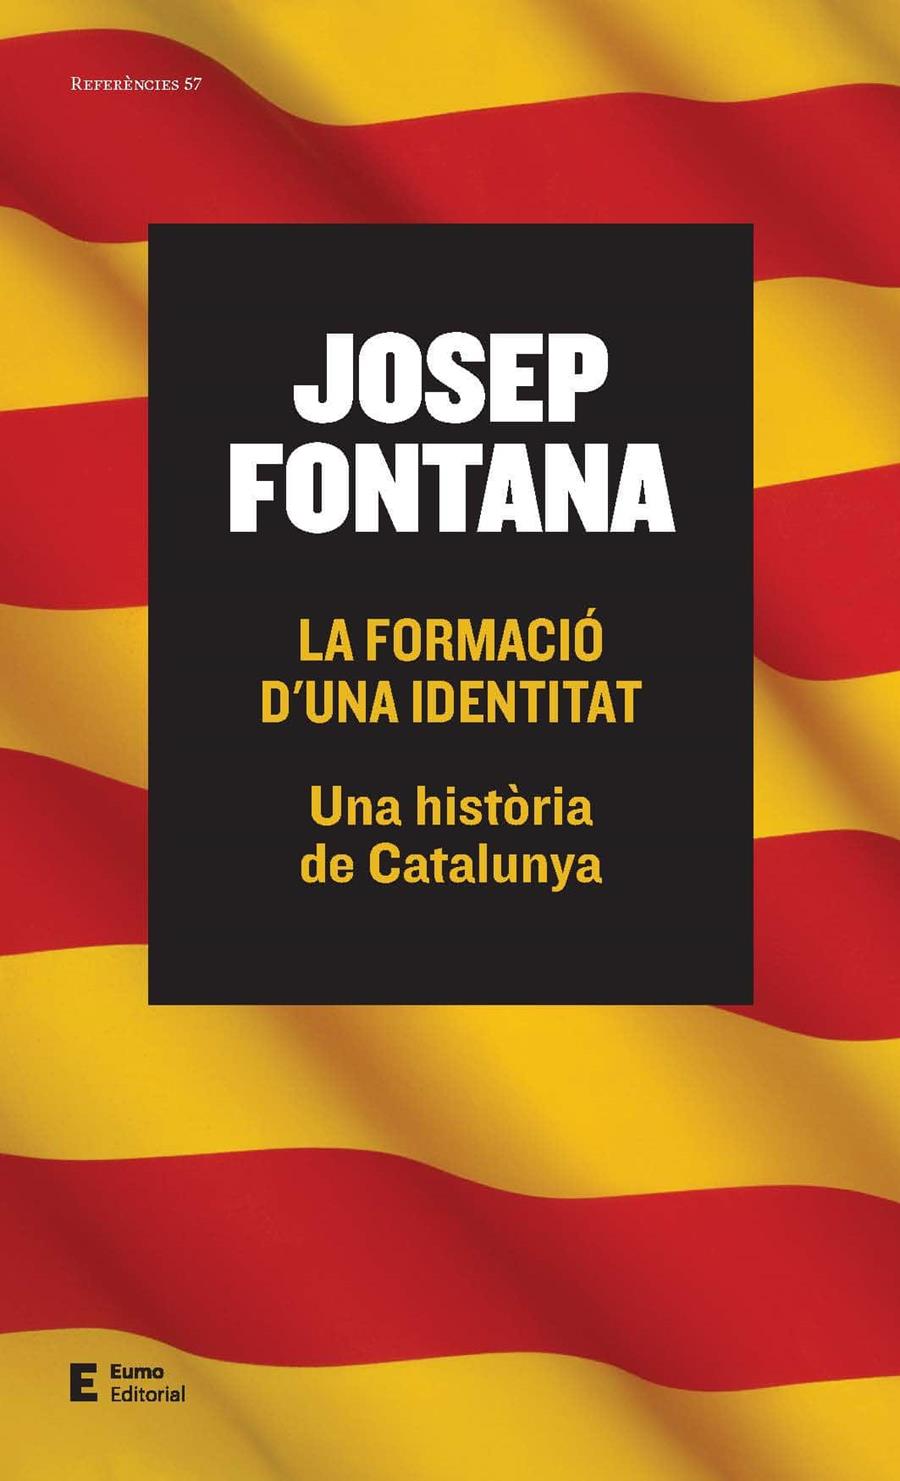 La formació d'una identitat | Josep Fontana Lázaro | Cooperativa autogestionària